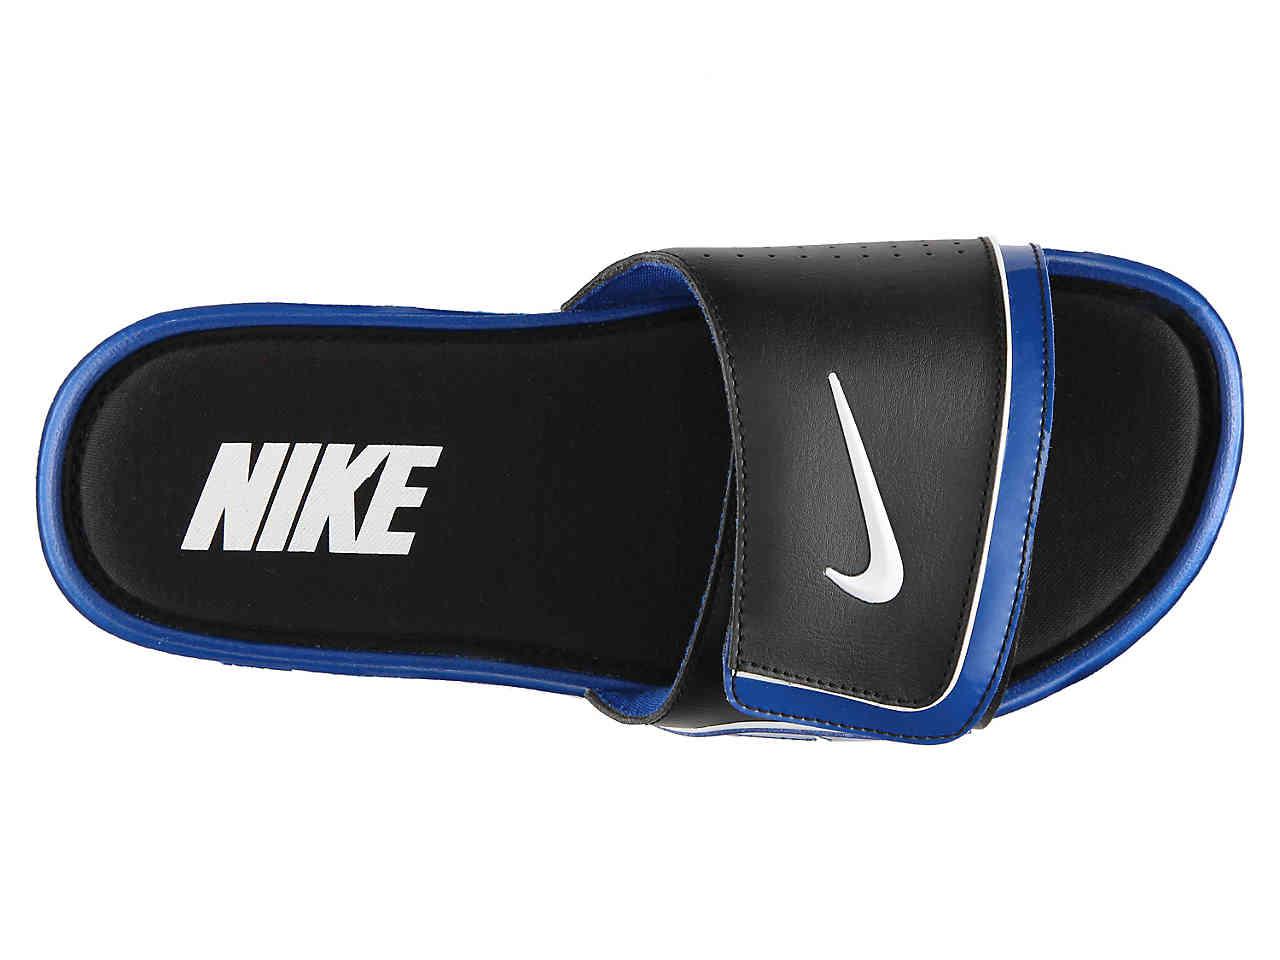 Nike Synthetic Comfort Slide 2 Sandal in Black/Blue (Blue) for Men - Lyst